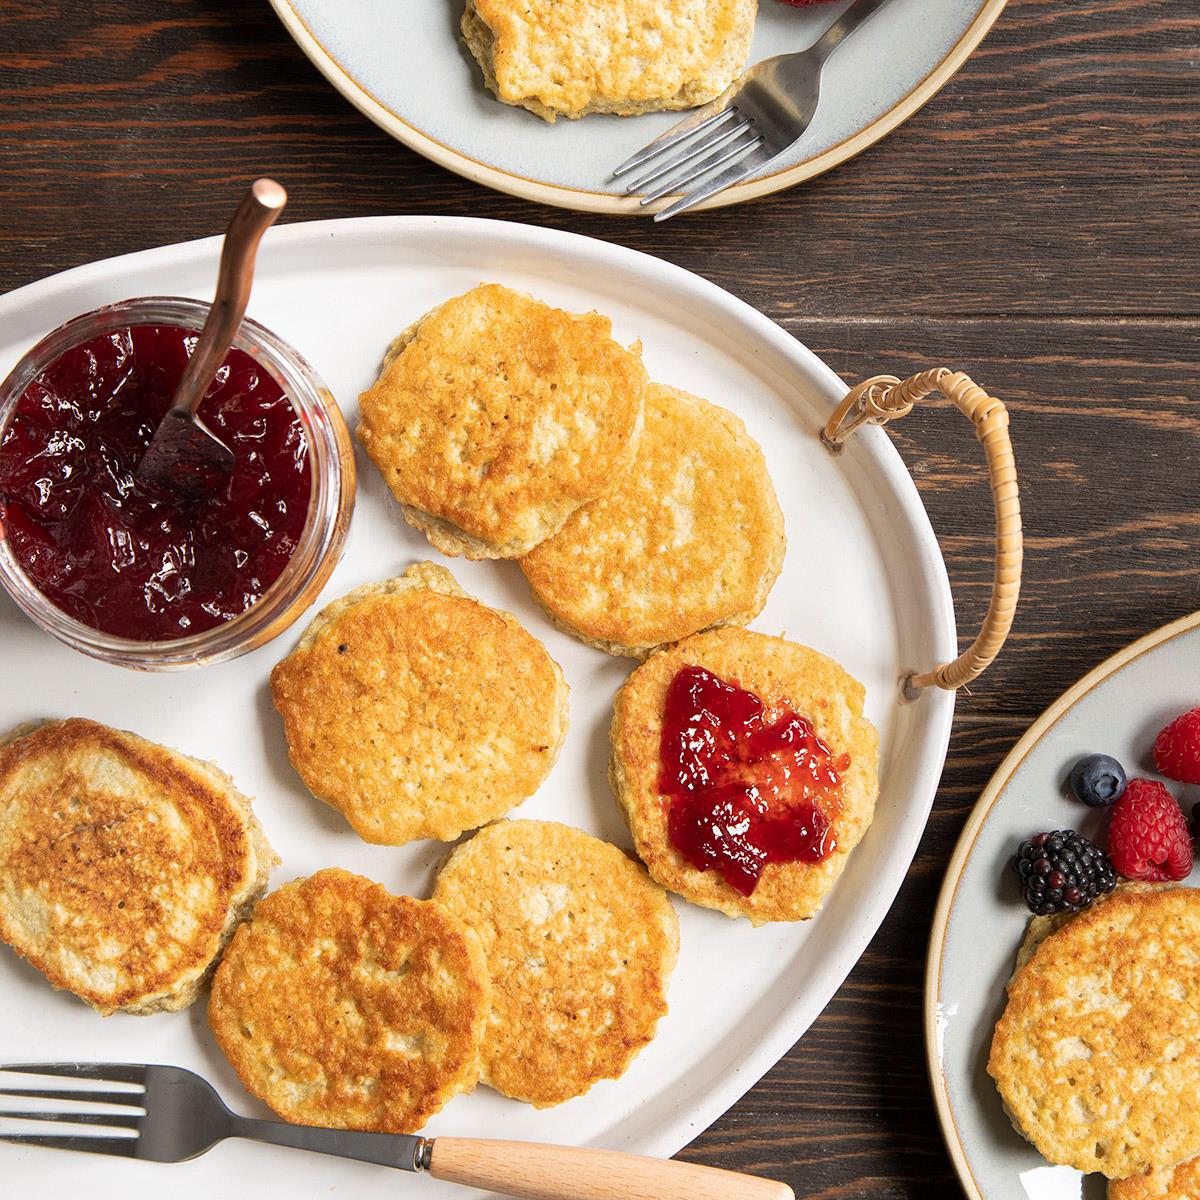 Share 36 kuva matzo meal pancakes